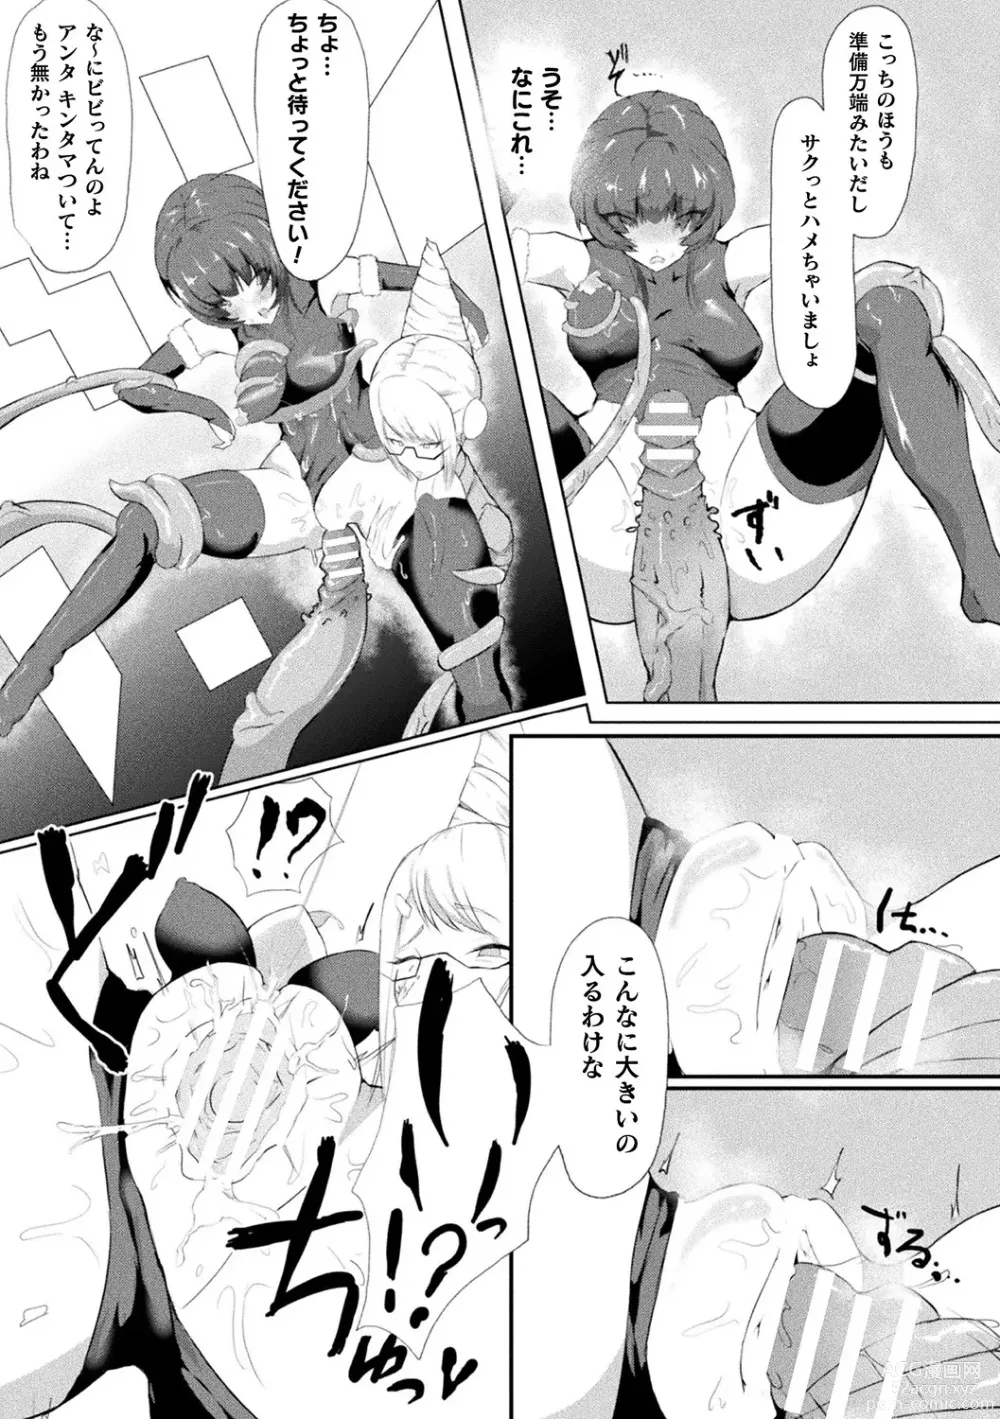 Page 93 of manga Bessatsu Comic Unreal AI ni Wakaraserareru Jinrui Hen Vol. 2